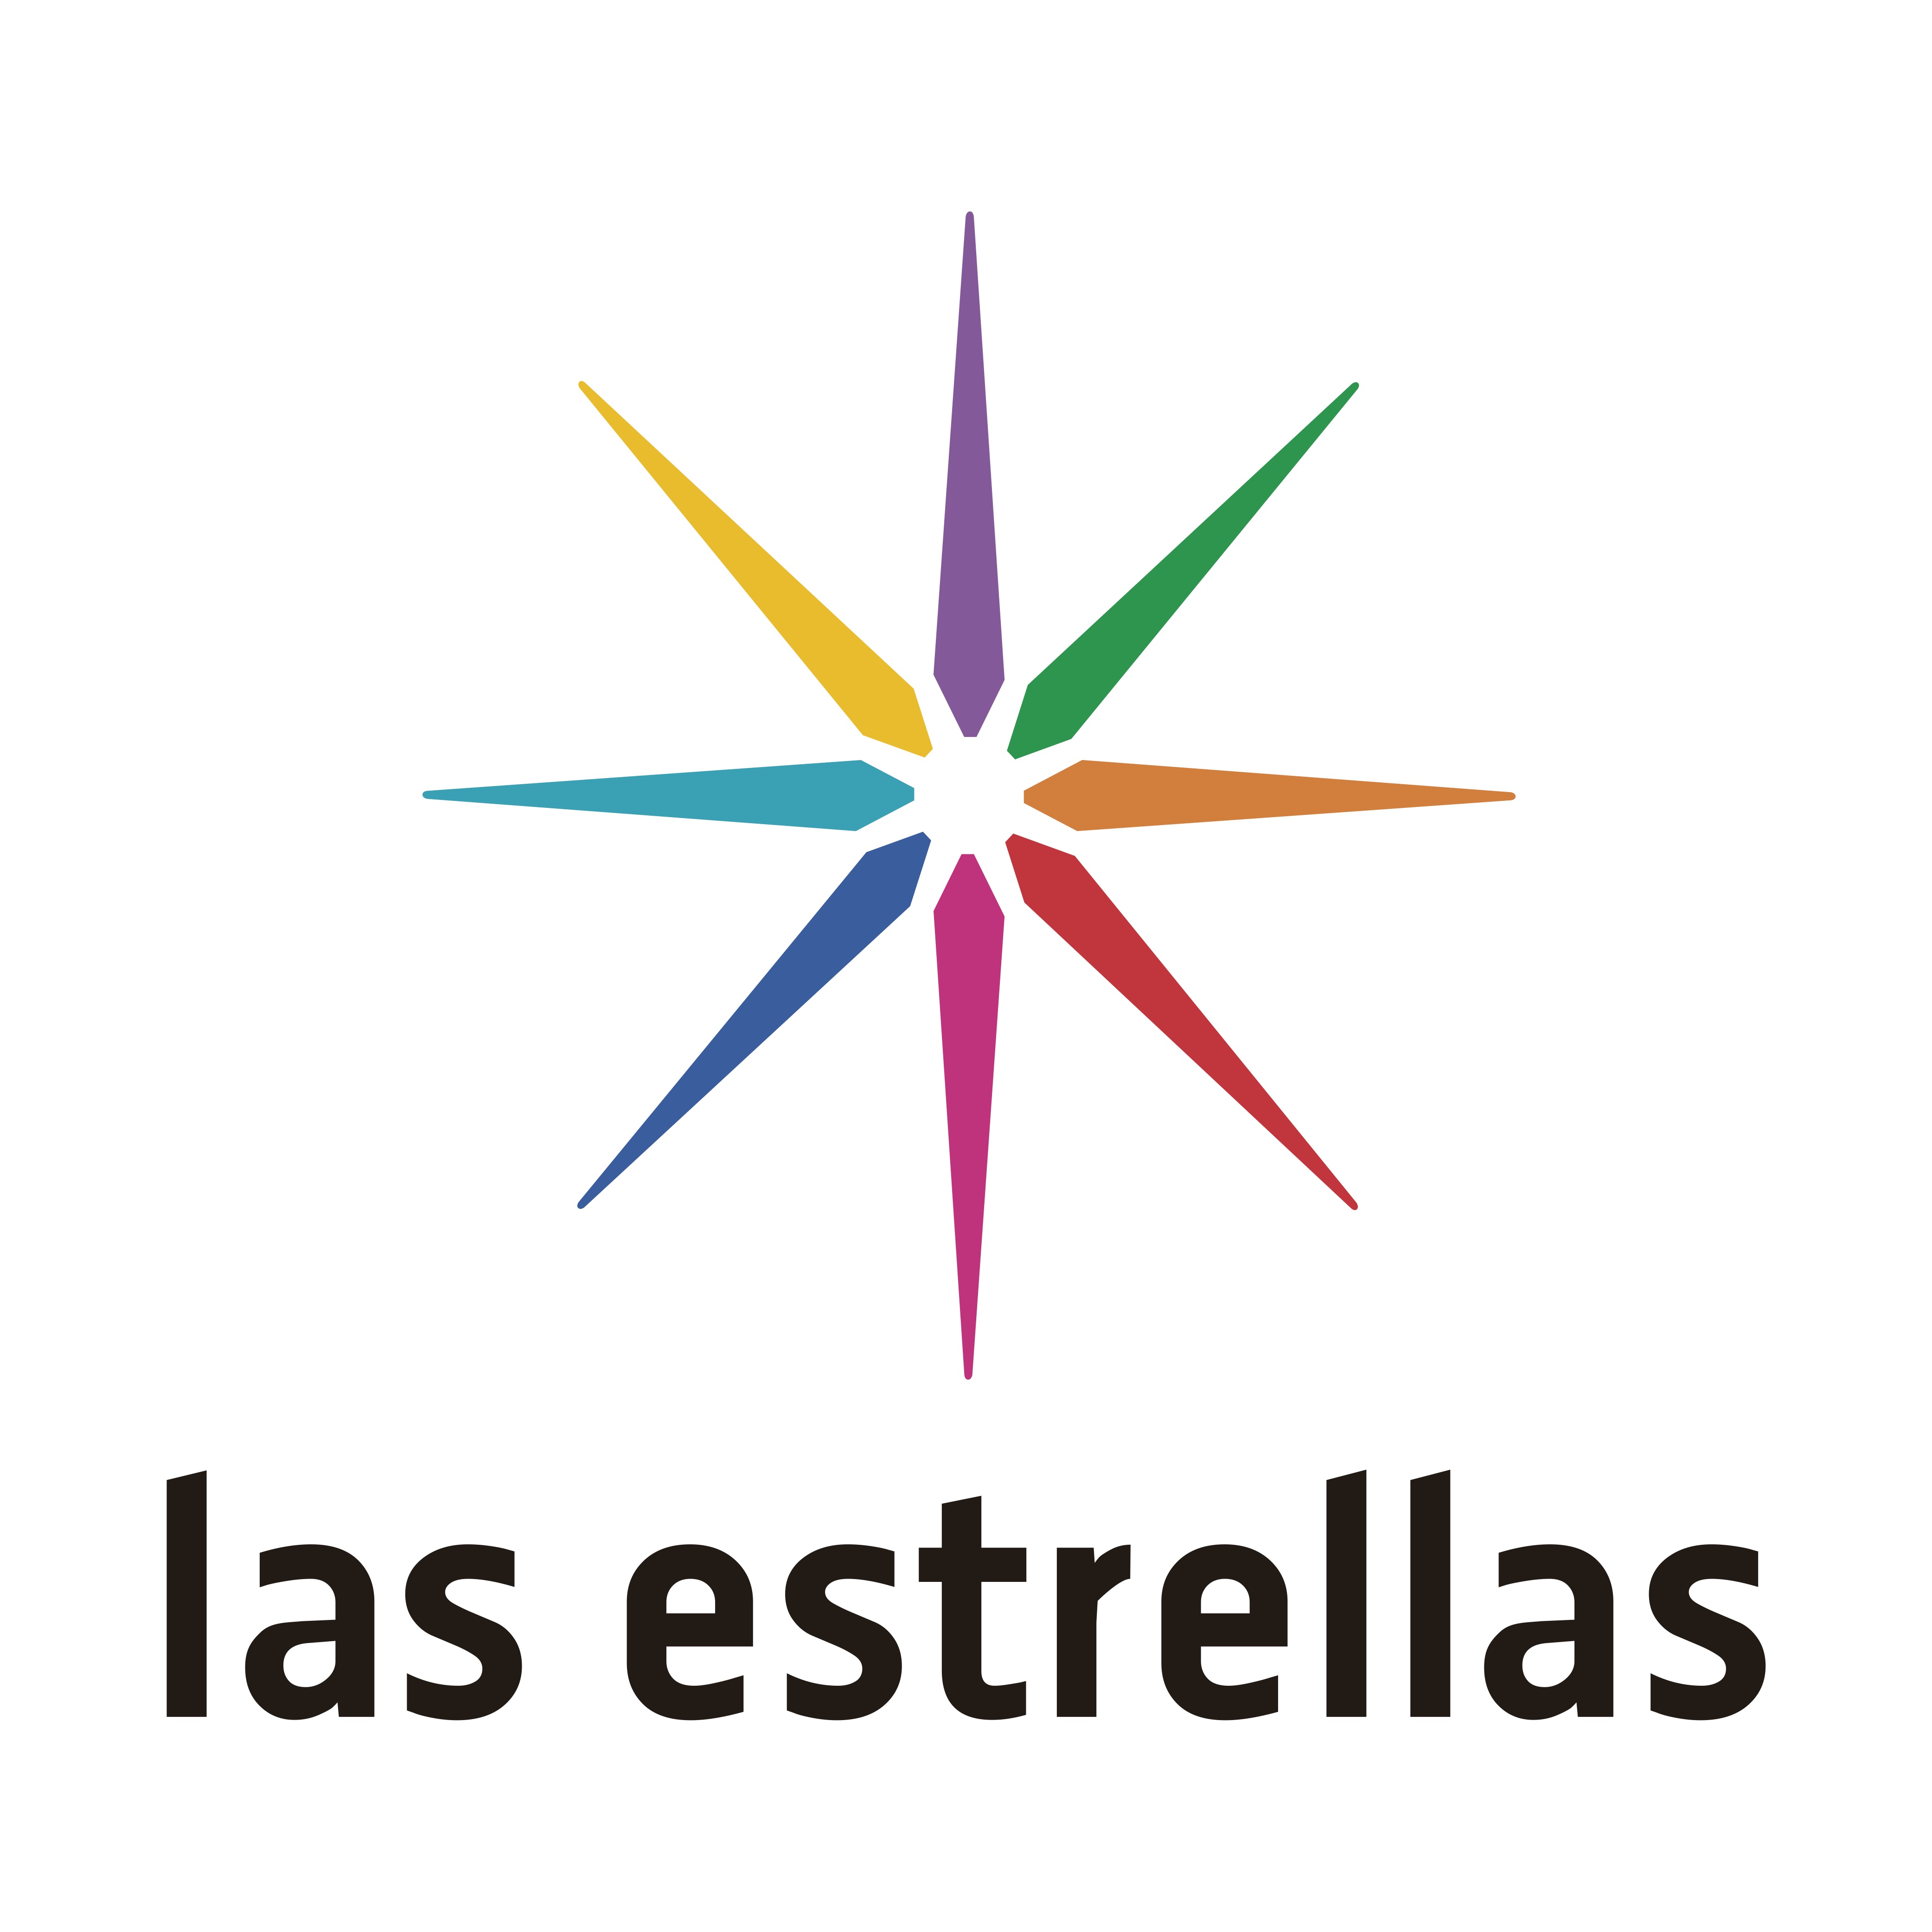 El nuevo logo de Las Estrellas se presentó en 2016, aunque se conoce coloquialmente como "el 2" o "el Canal de las estrellas", esta es su evolución.